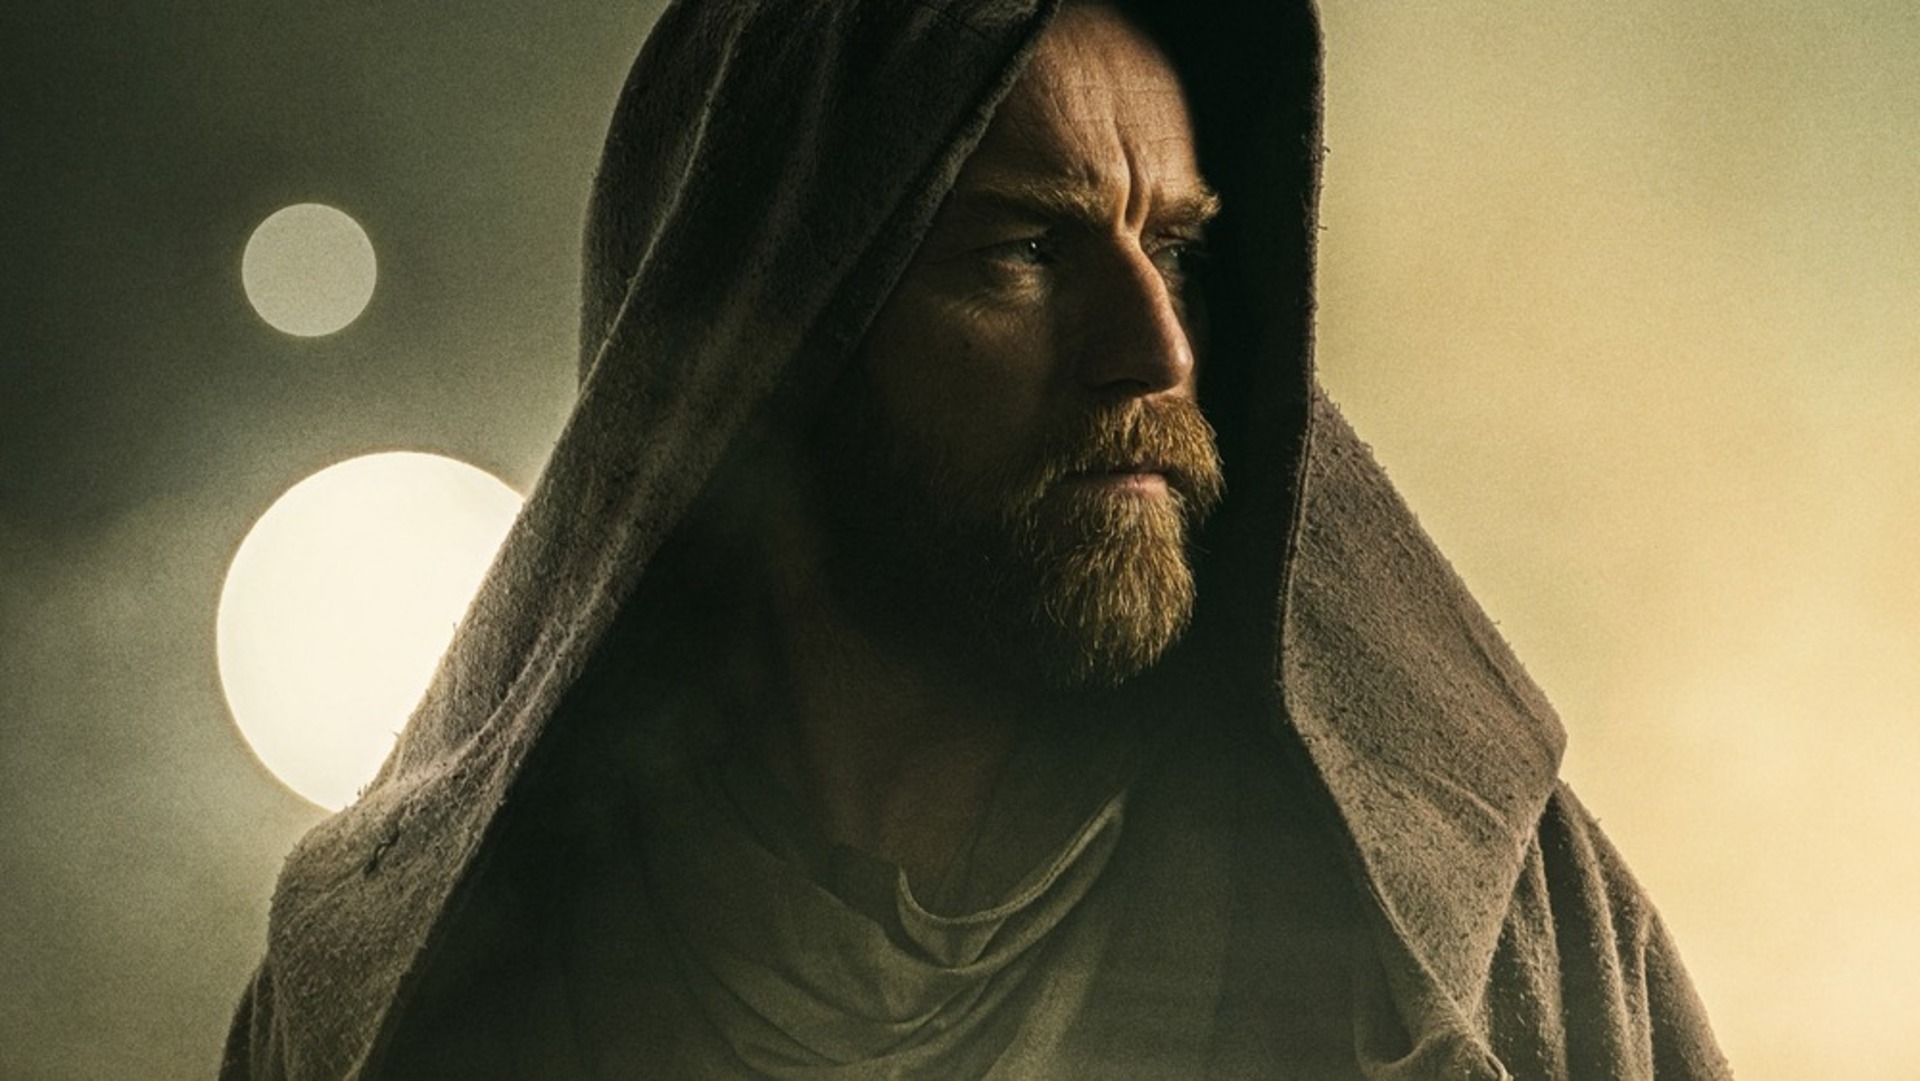 Chegou o novo trailer de Obi-Wan Kenobi: 4 de maio esteja com você!